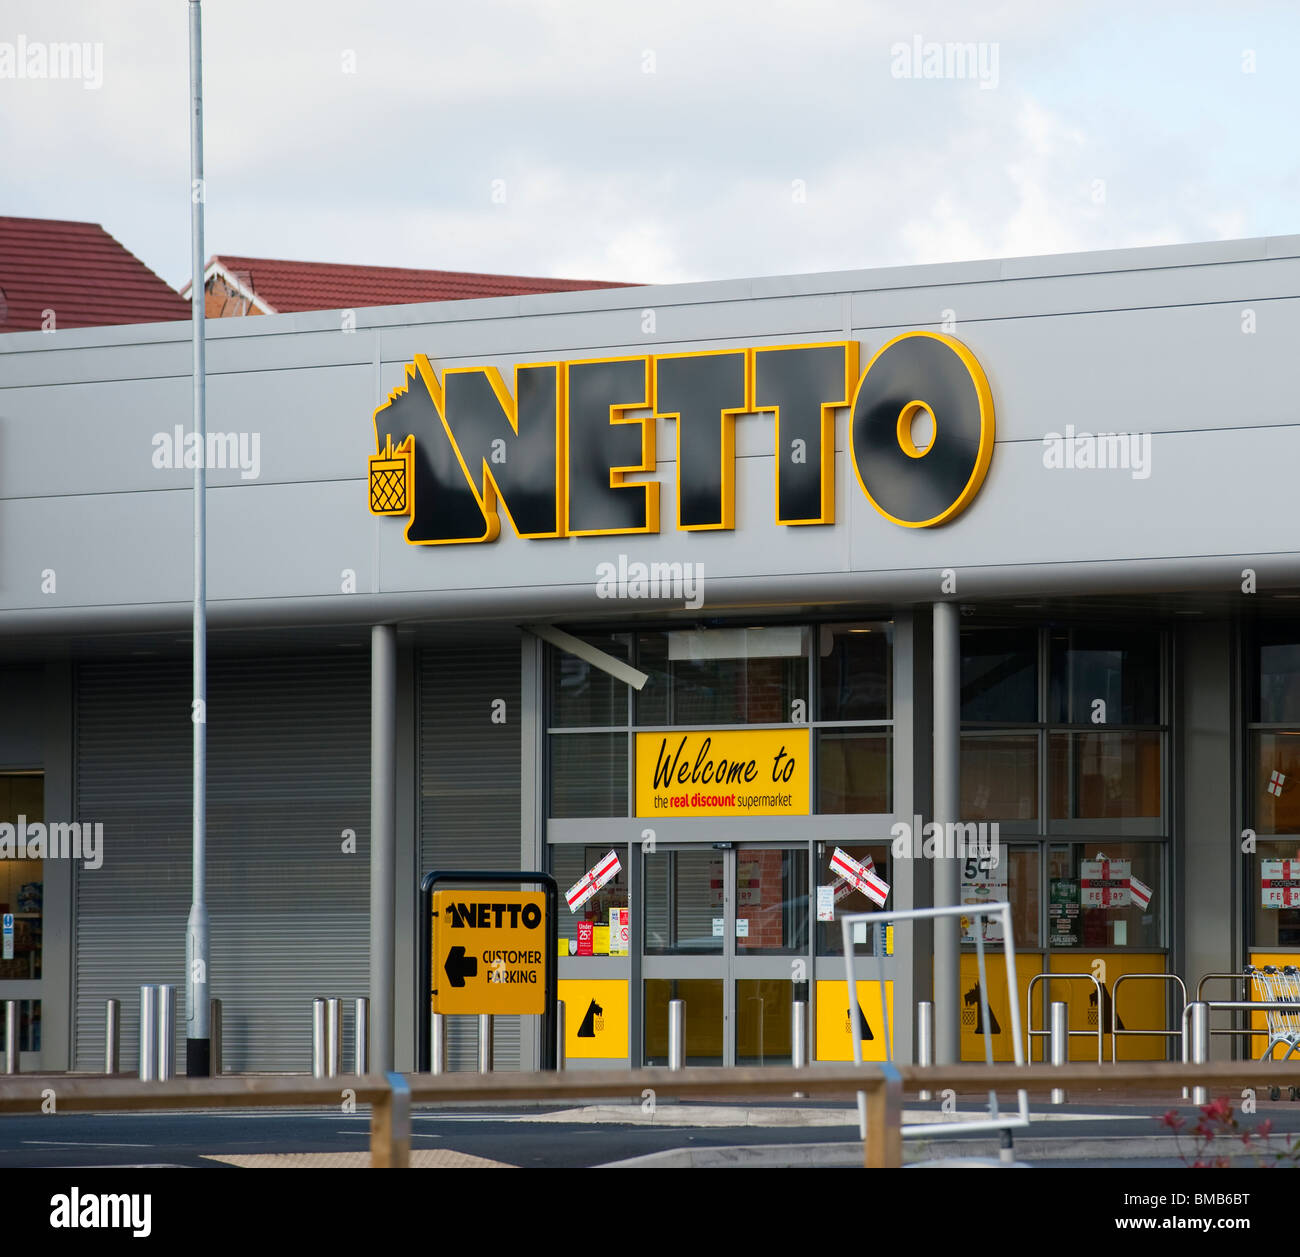 Asda Announces purchase of Netto on 26.05.10 Image taken 28.05.10 Stock Photo